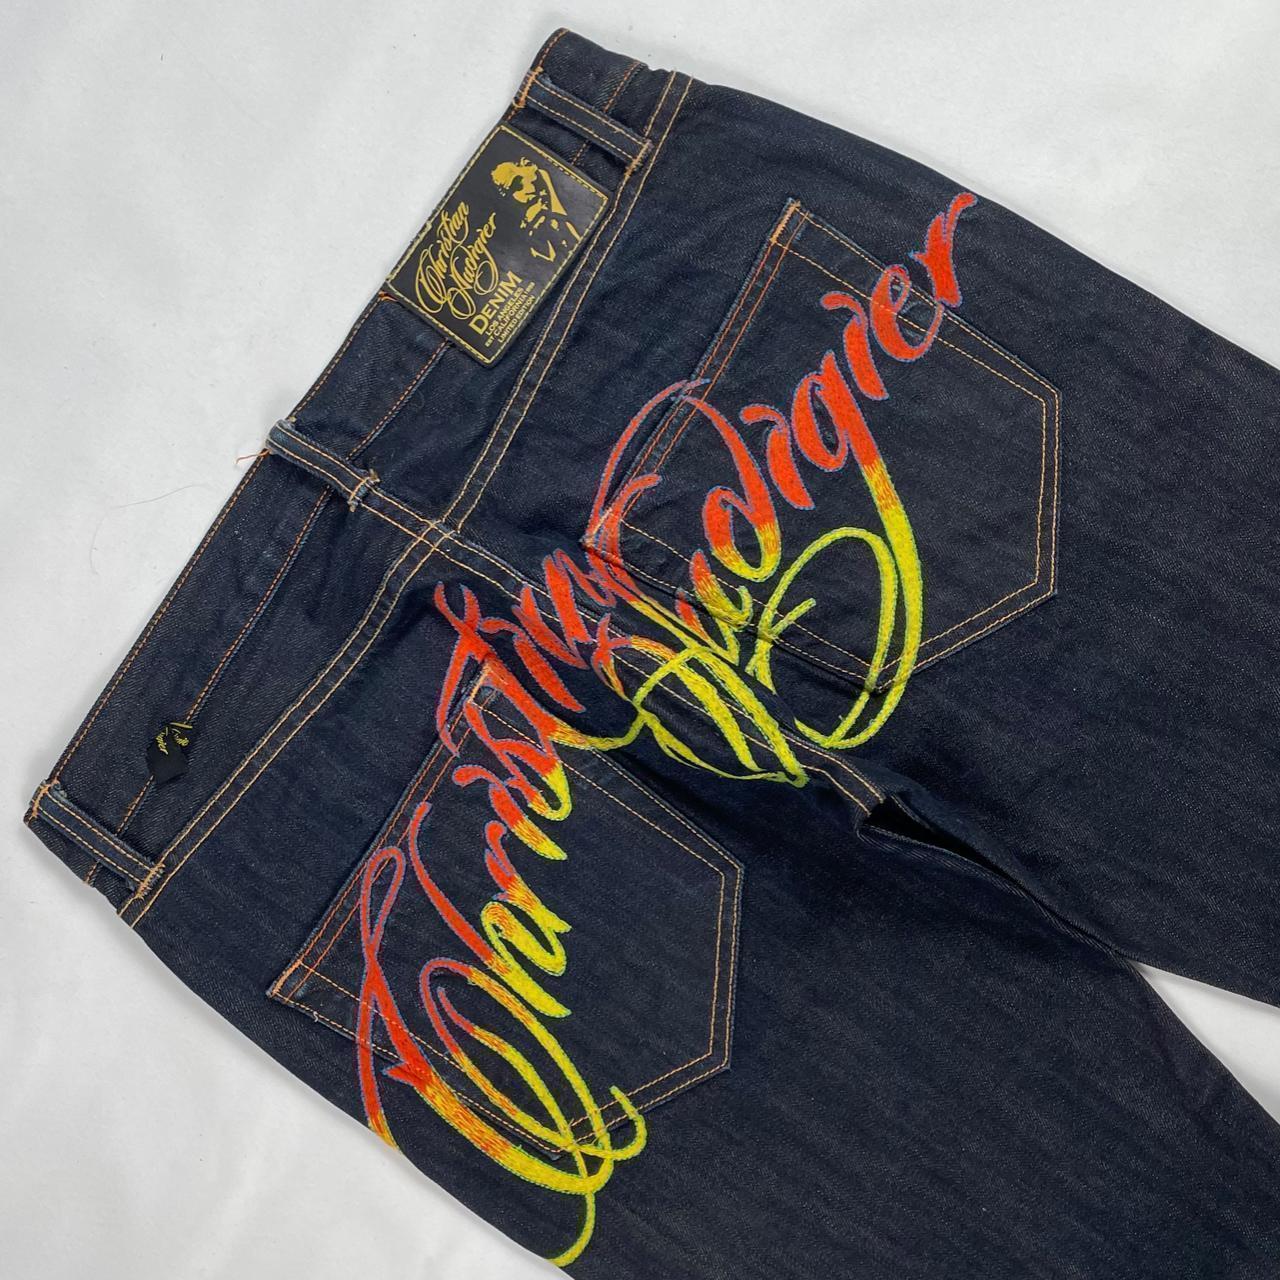 Authentic Vintage Christian Audigier Jeans  (32")